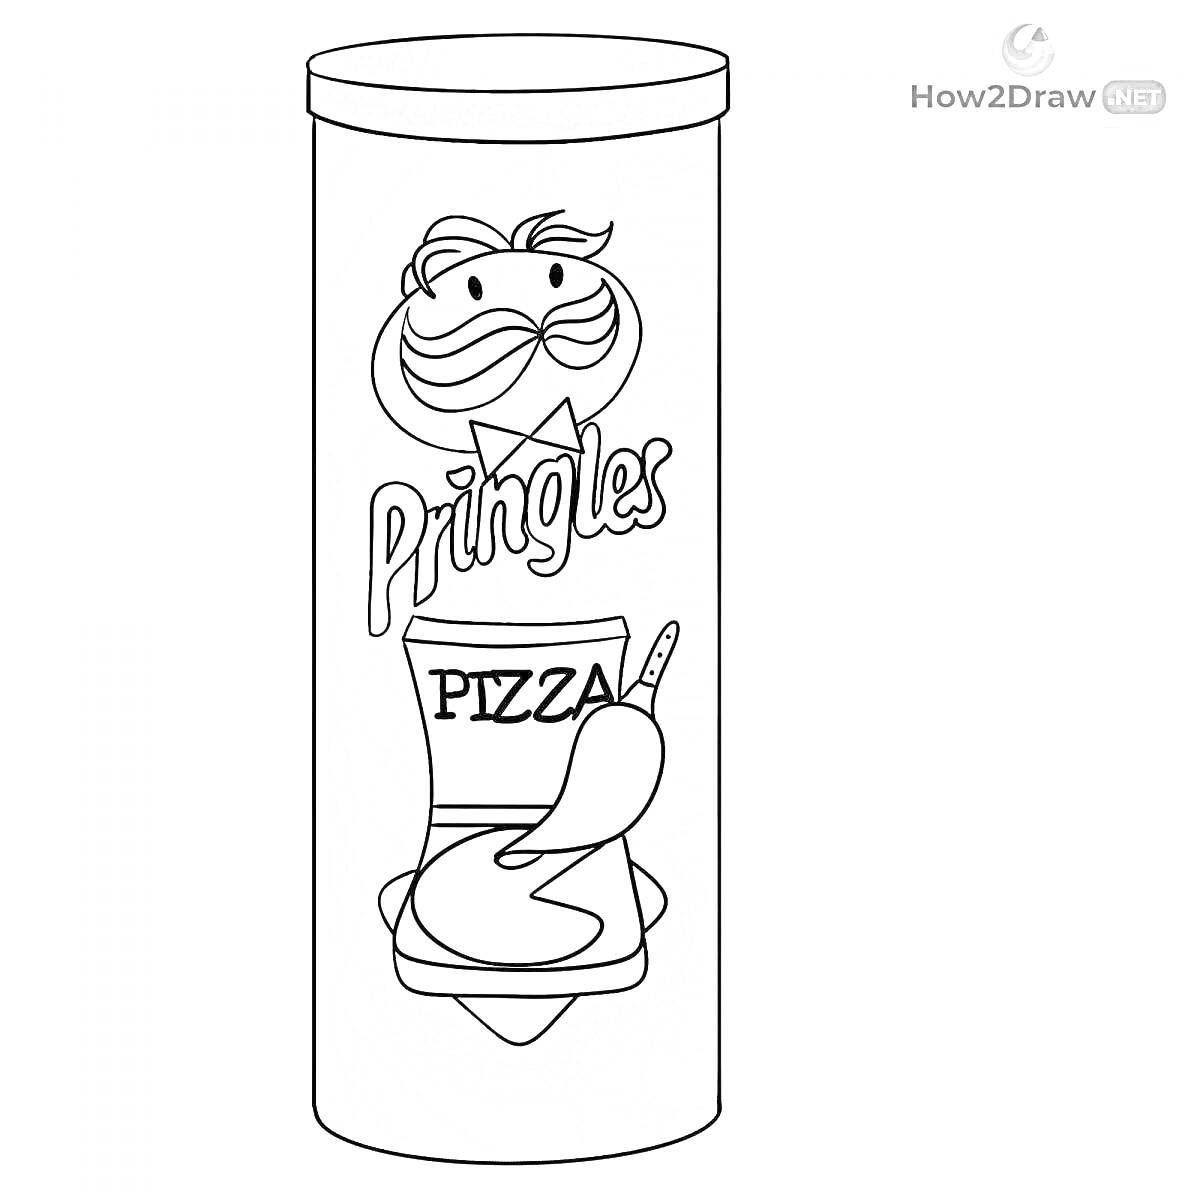 Банка чипсов Pringles со вкусом пиццы и логотипом